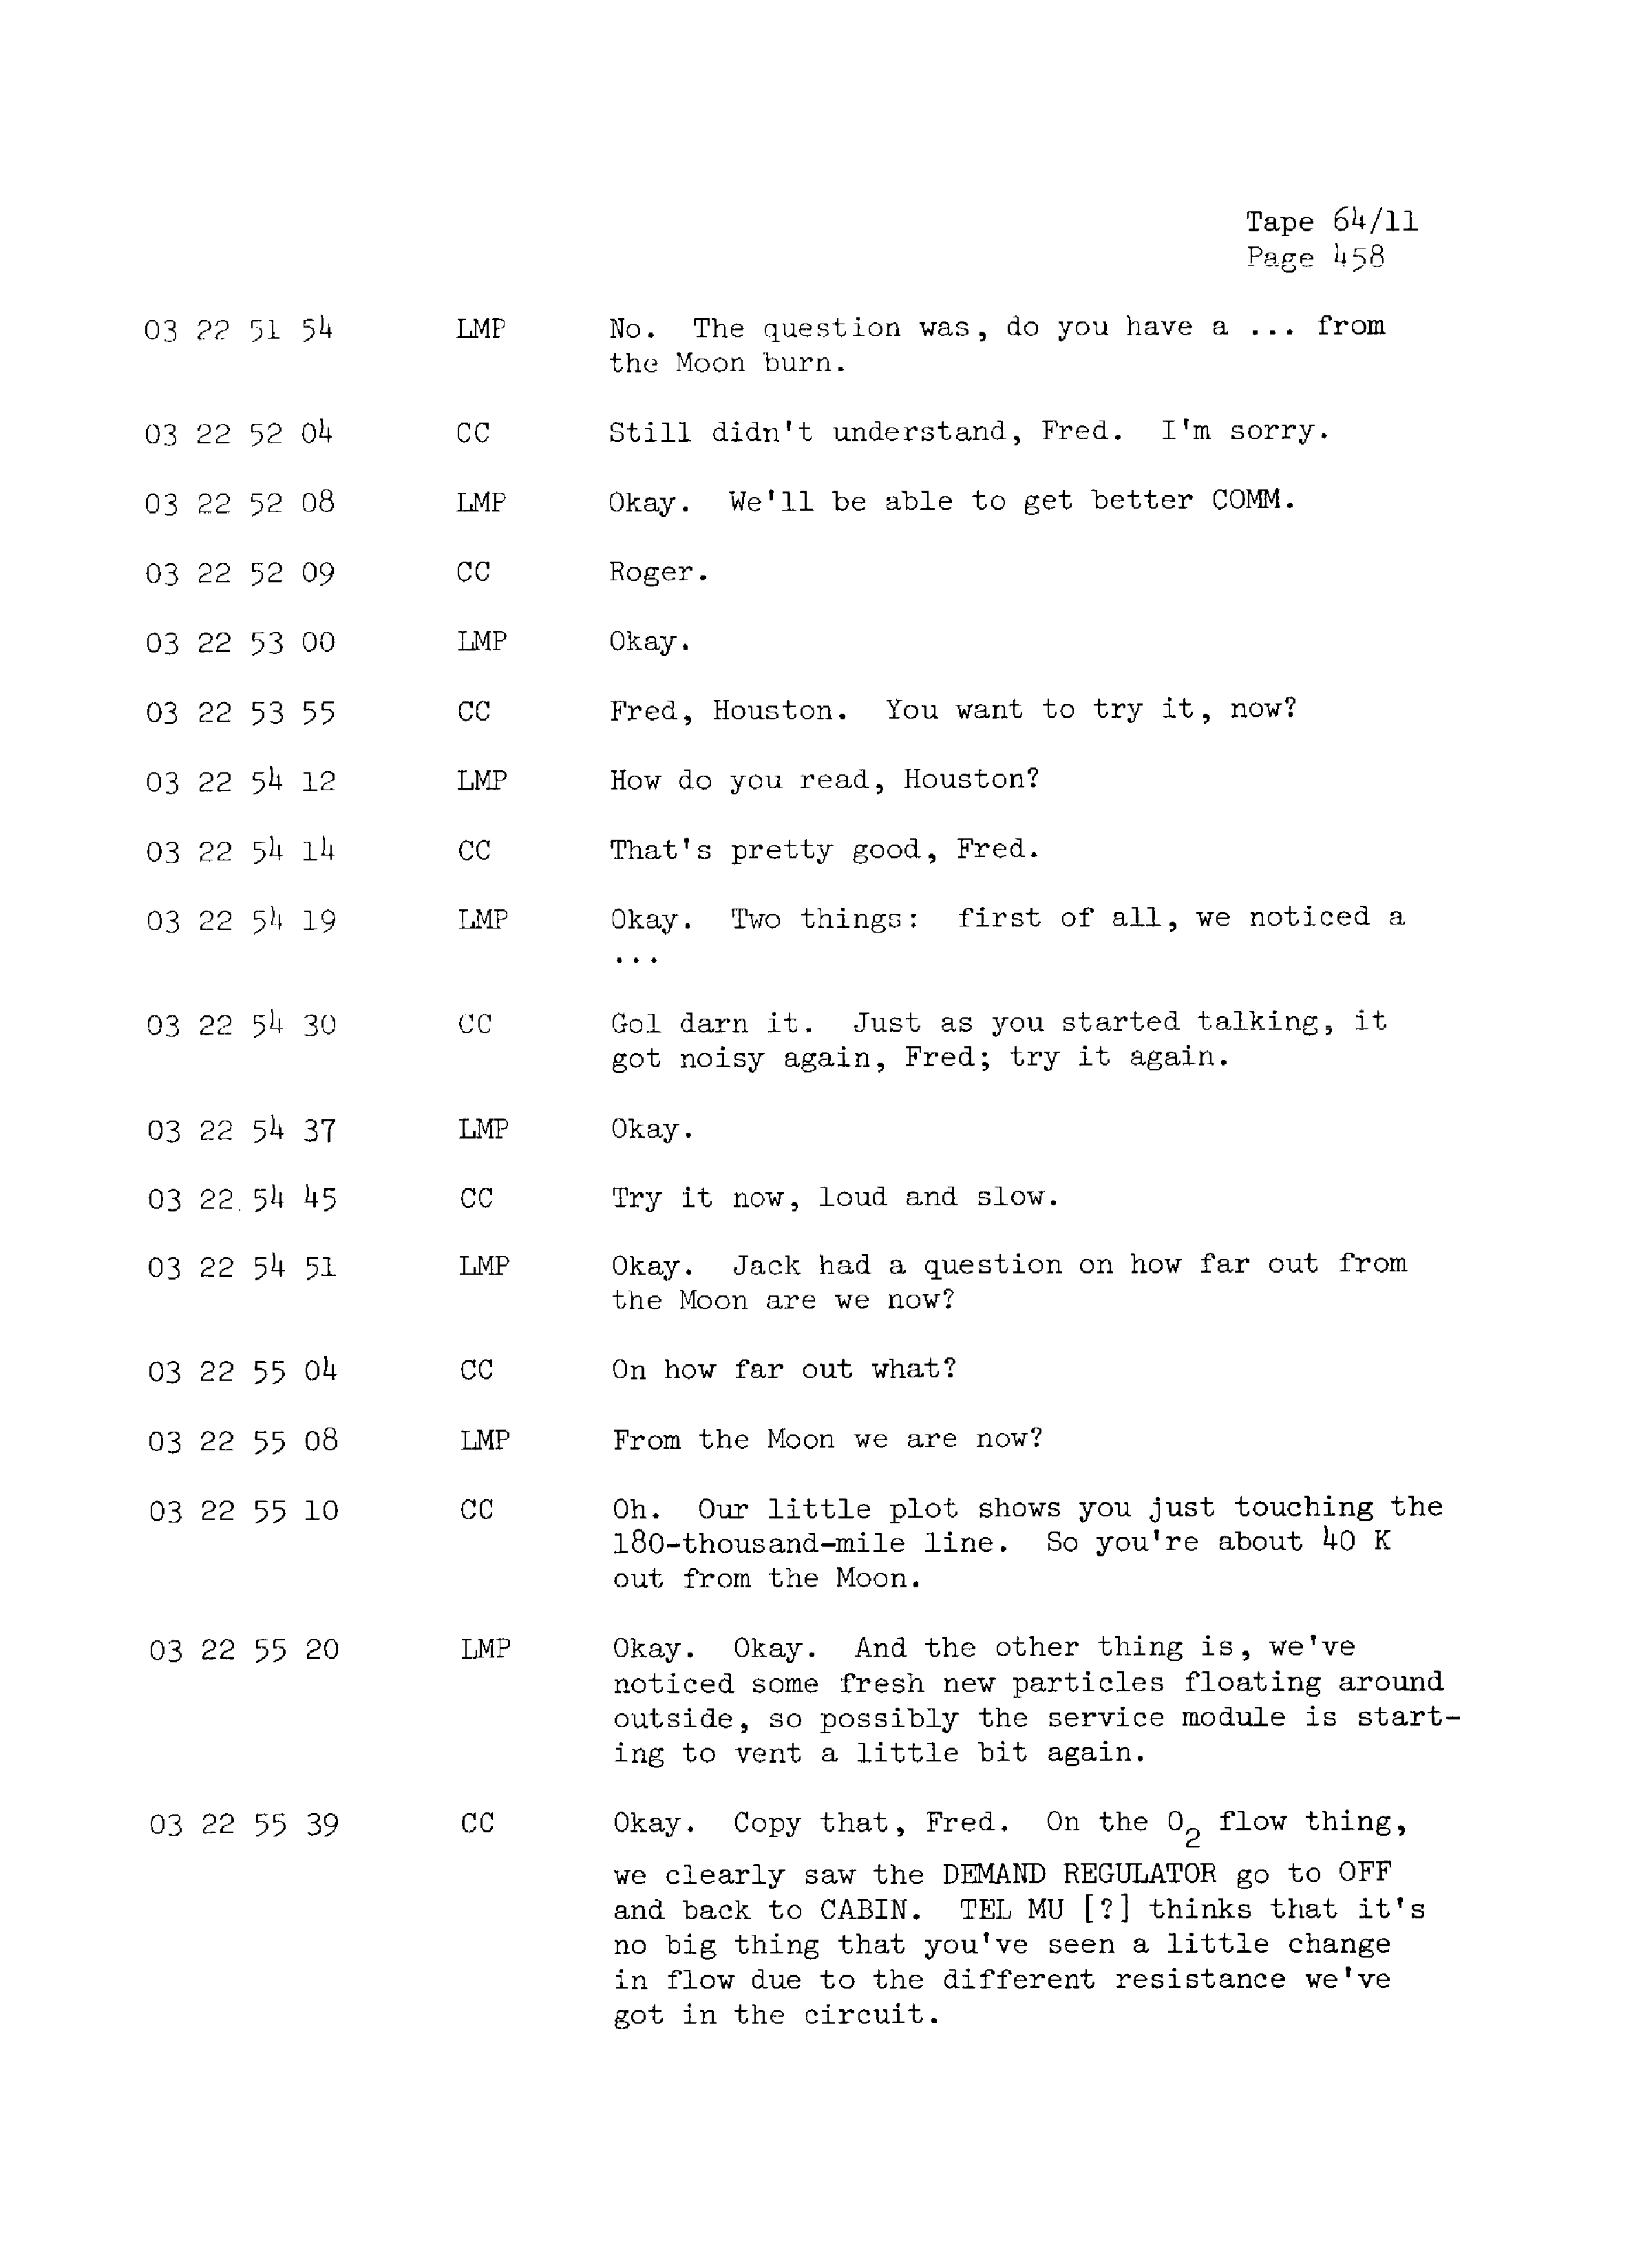 Page 465 of Apollo 13’s original transcript